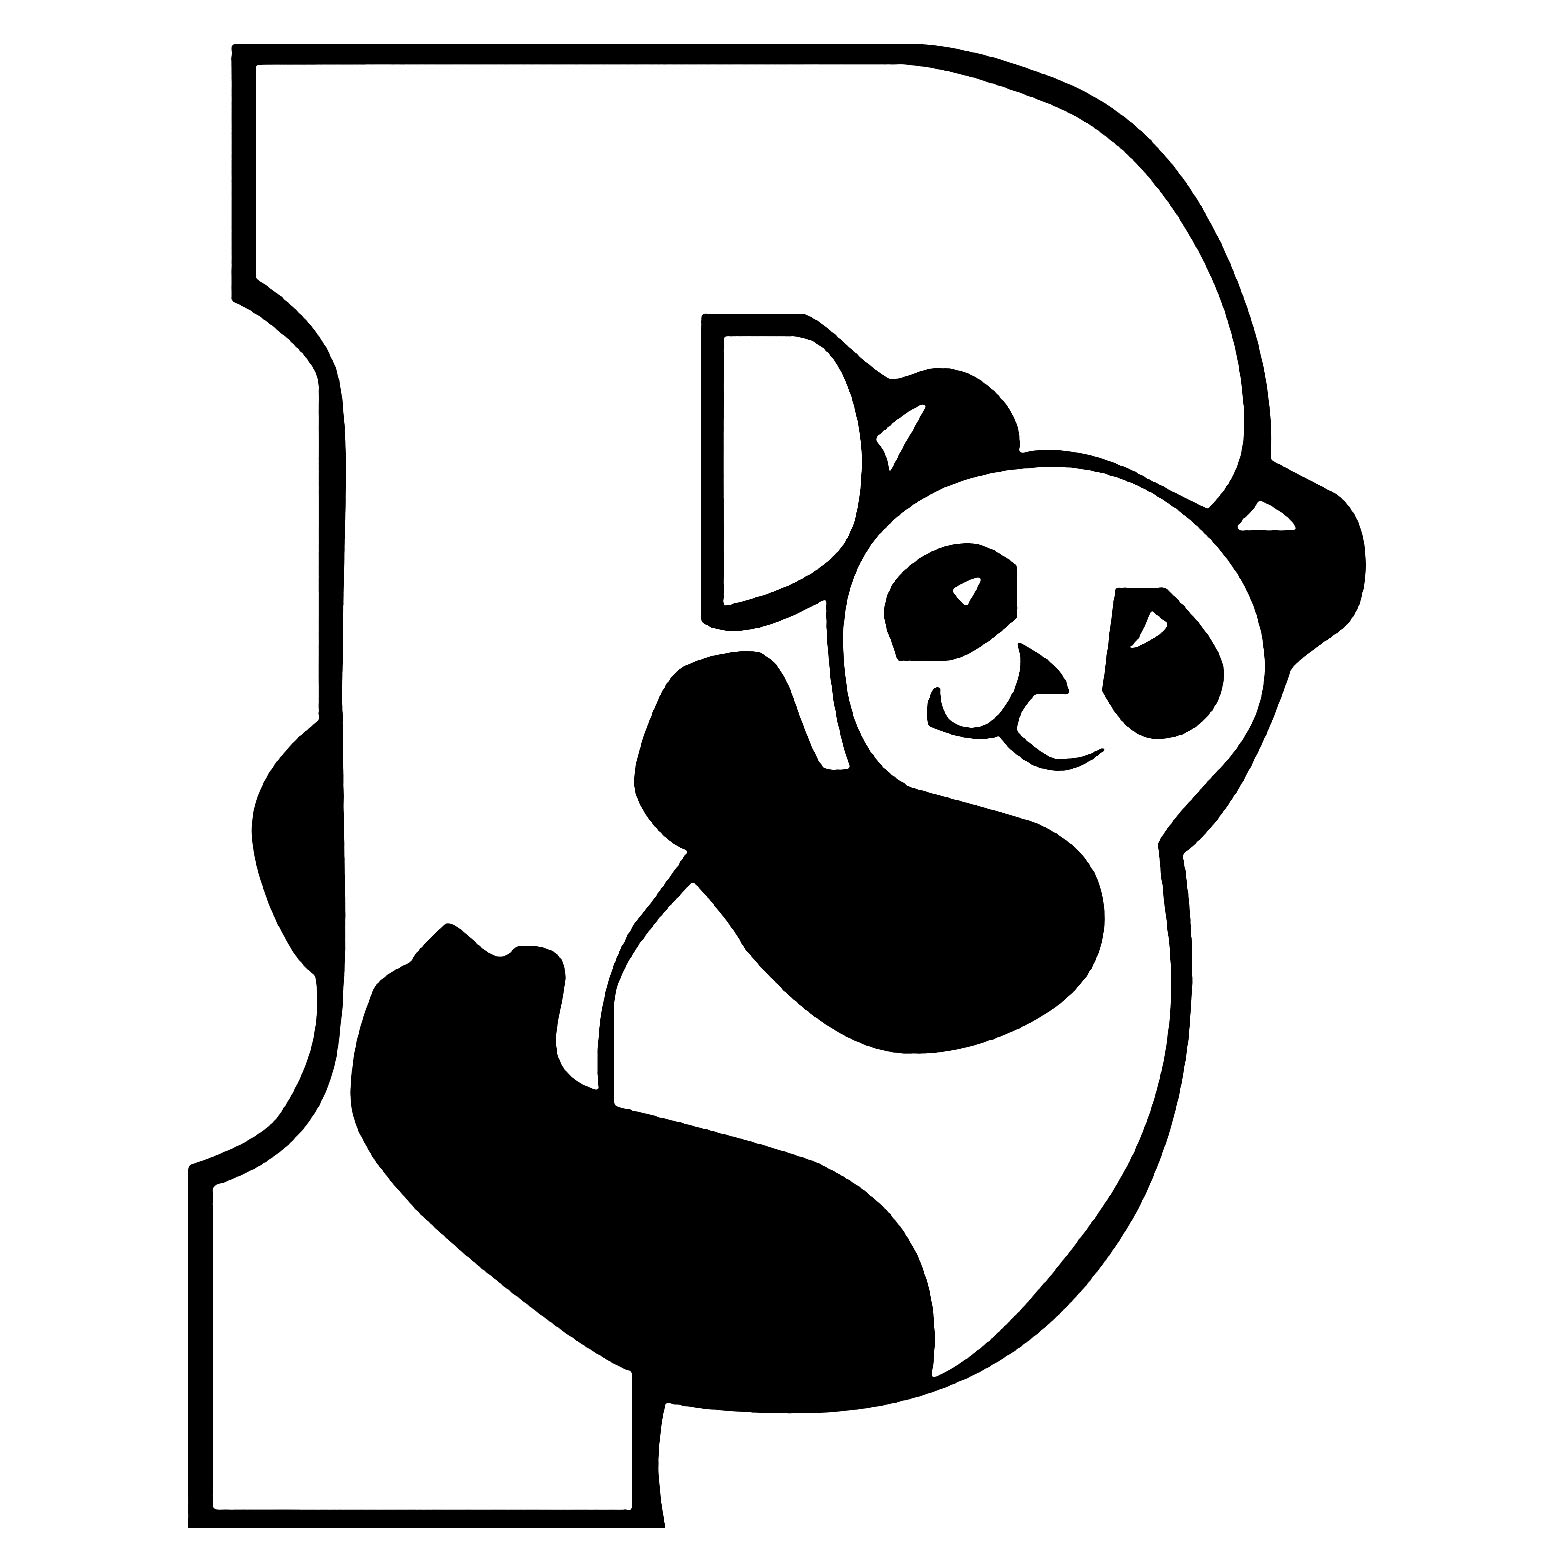 desenho de panda fácil